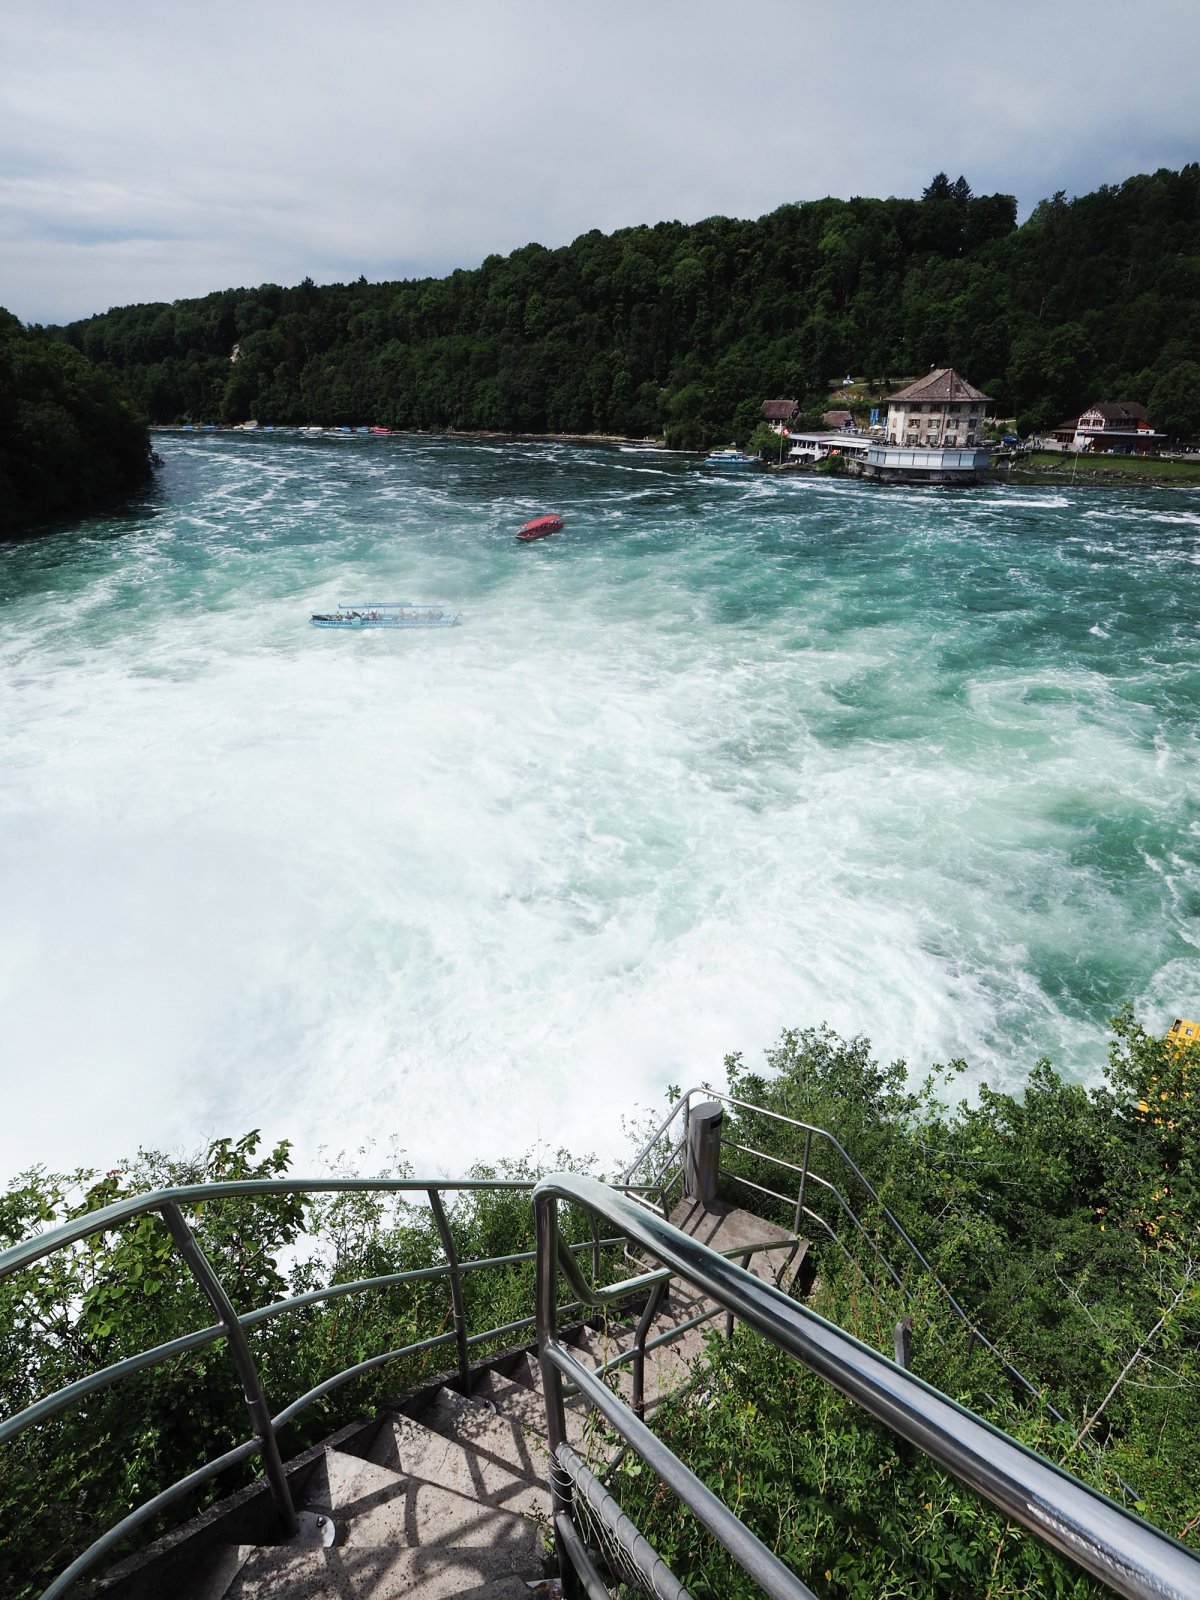 Rhine Falls in Neuhausen, Switzerland